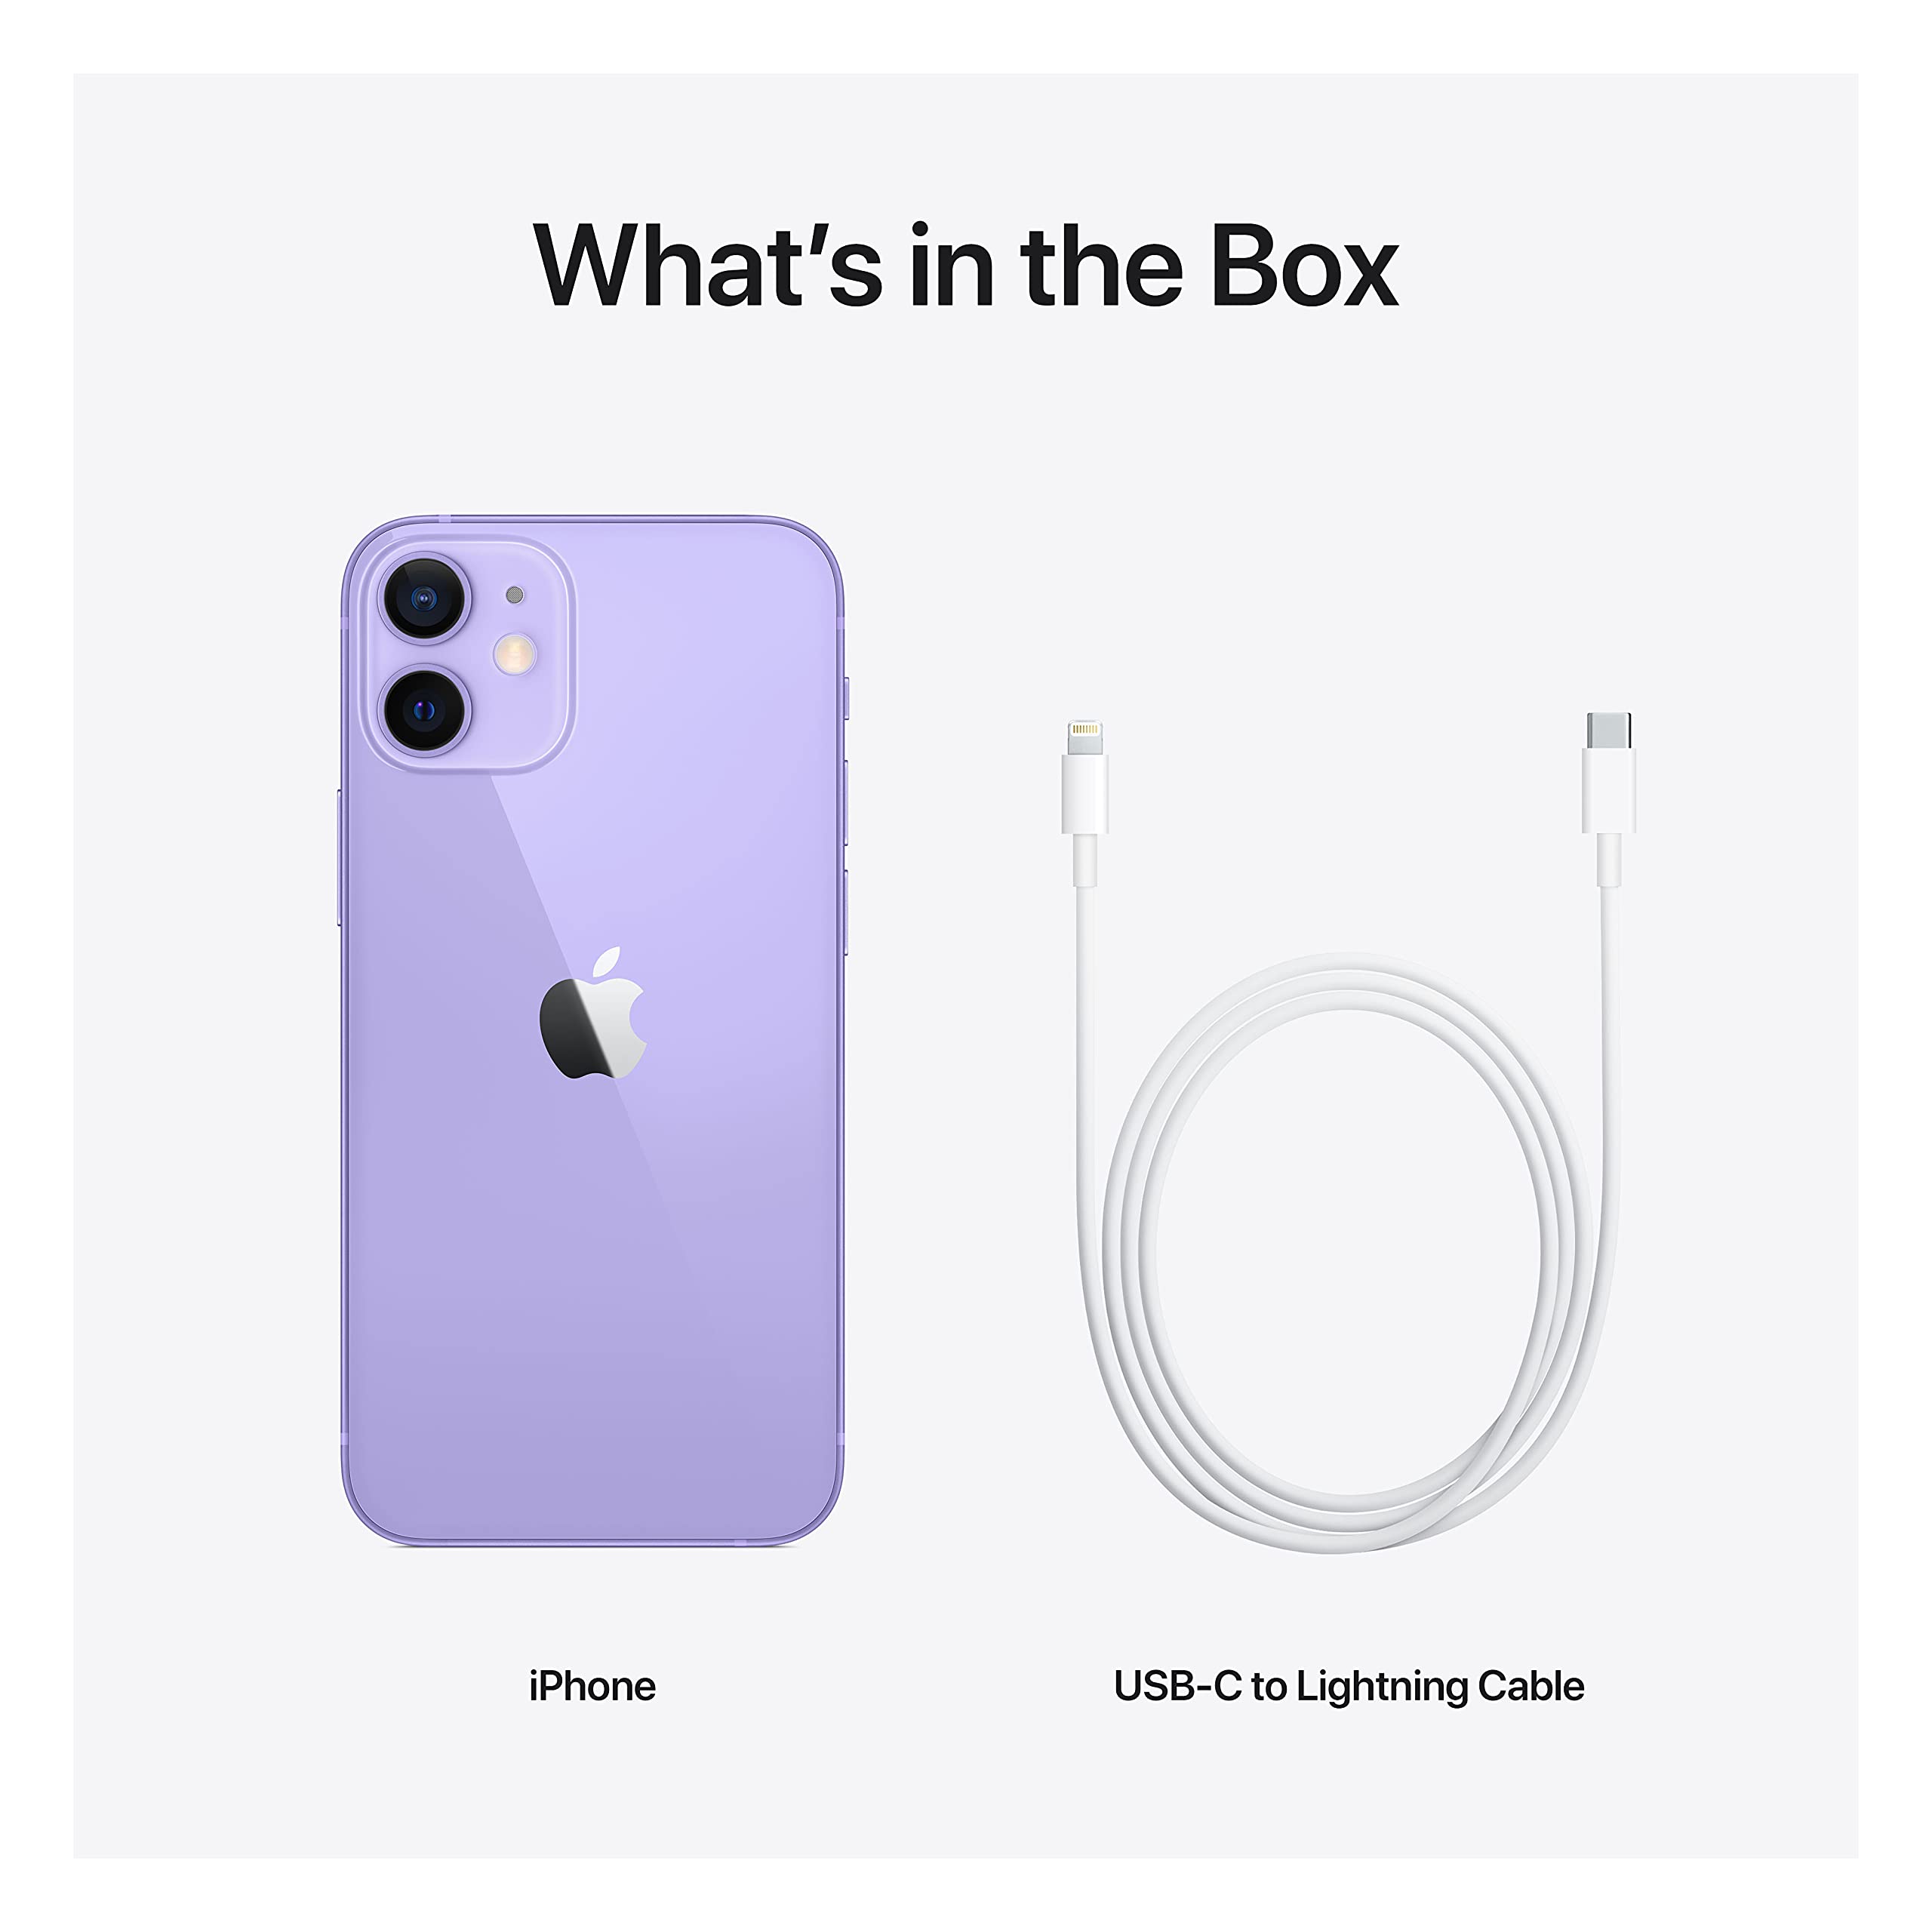 Apple iPhone 12 mini (64GB) - Purple